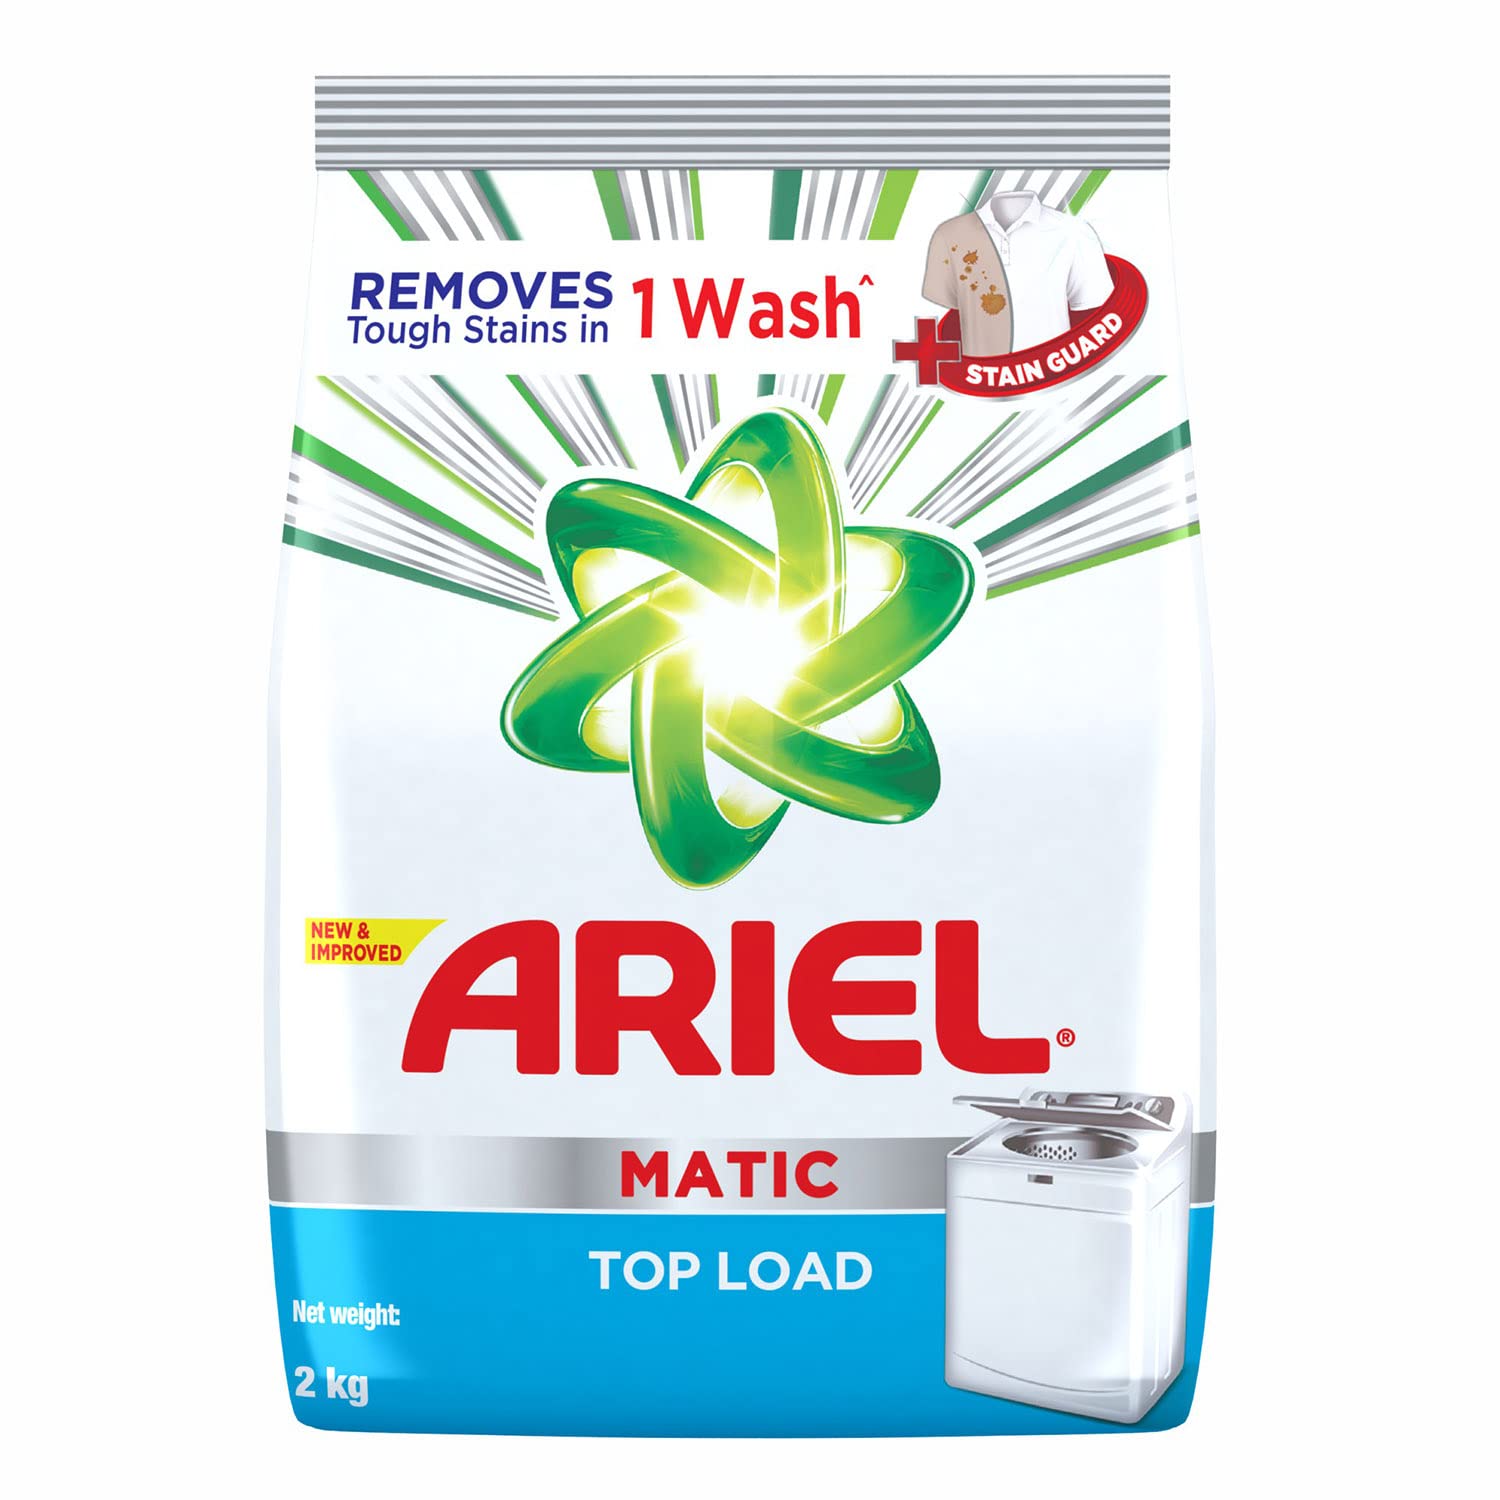 Ariel Matic Top Load Detergent Washing Powder 2 KG